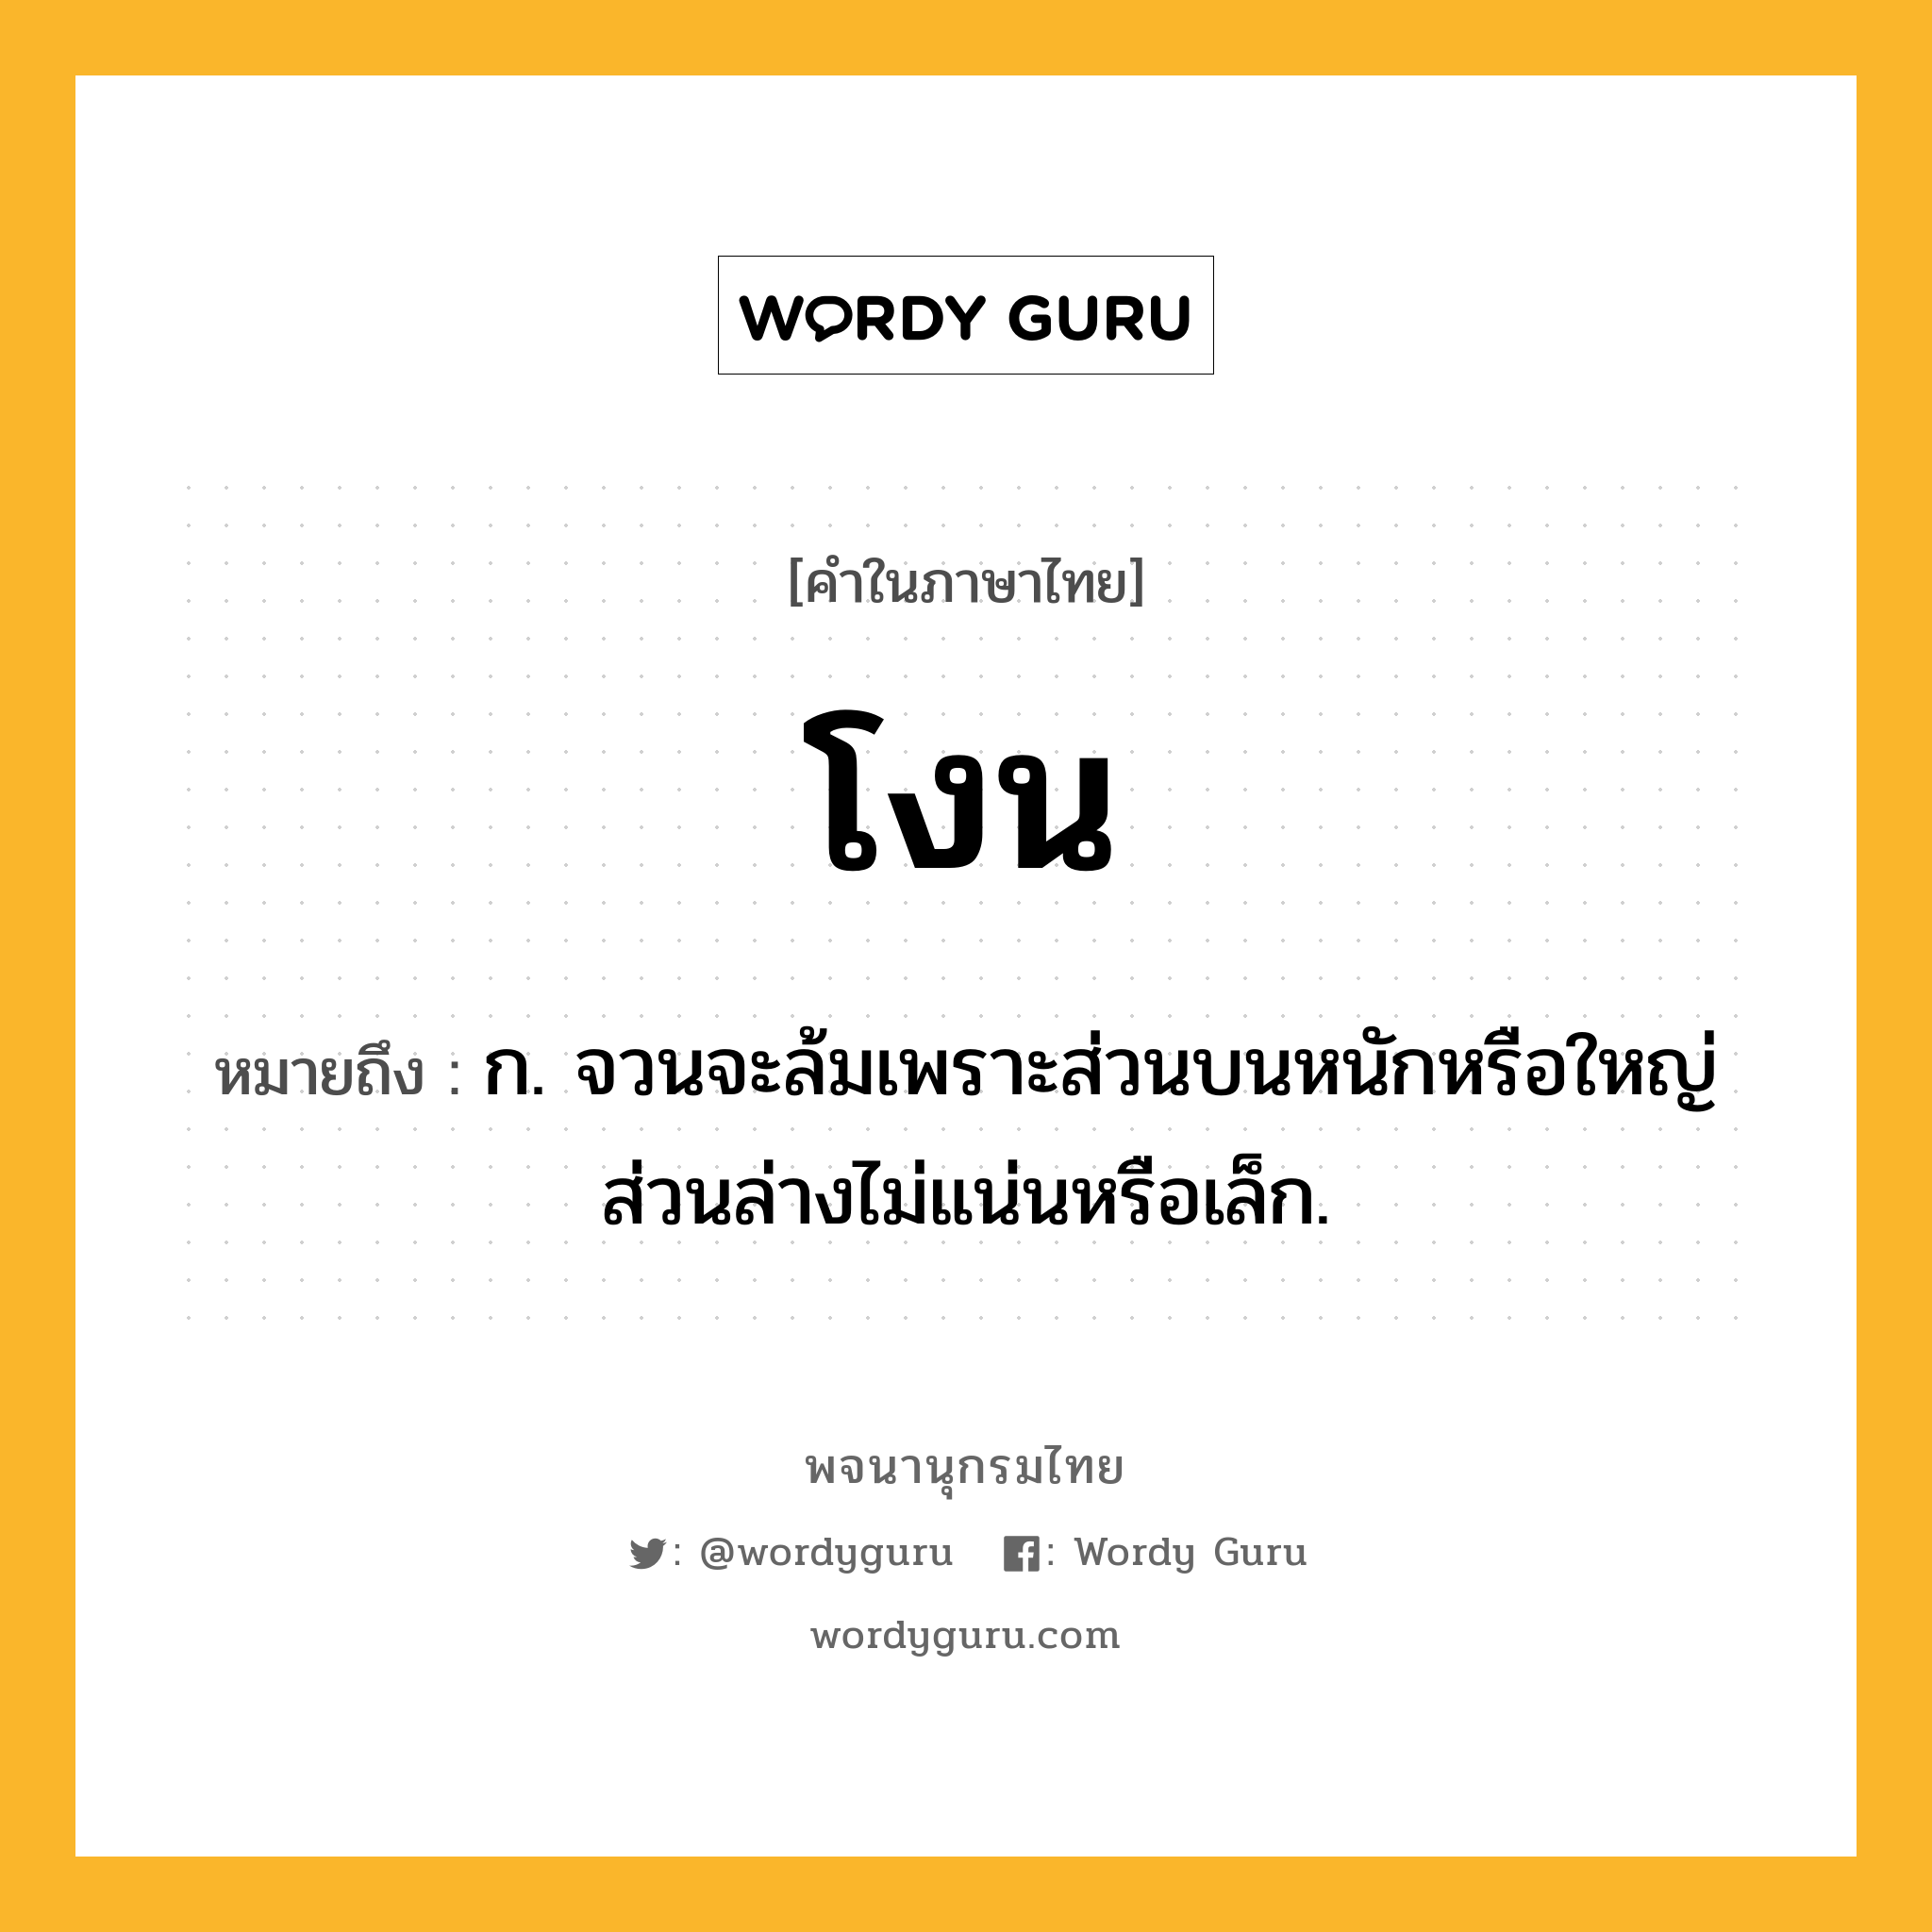 โงน ความหมาย หมายถึงอะไร?, คำในภาษาไทย โงน หมายถึง ก. จวนจะล้มเพราะส่วนบนหนักหรือใหญ่ ส่วนล่างไม่แน่นหรือเล็ก.